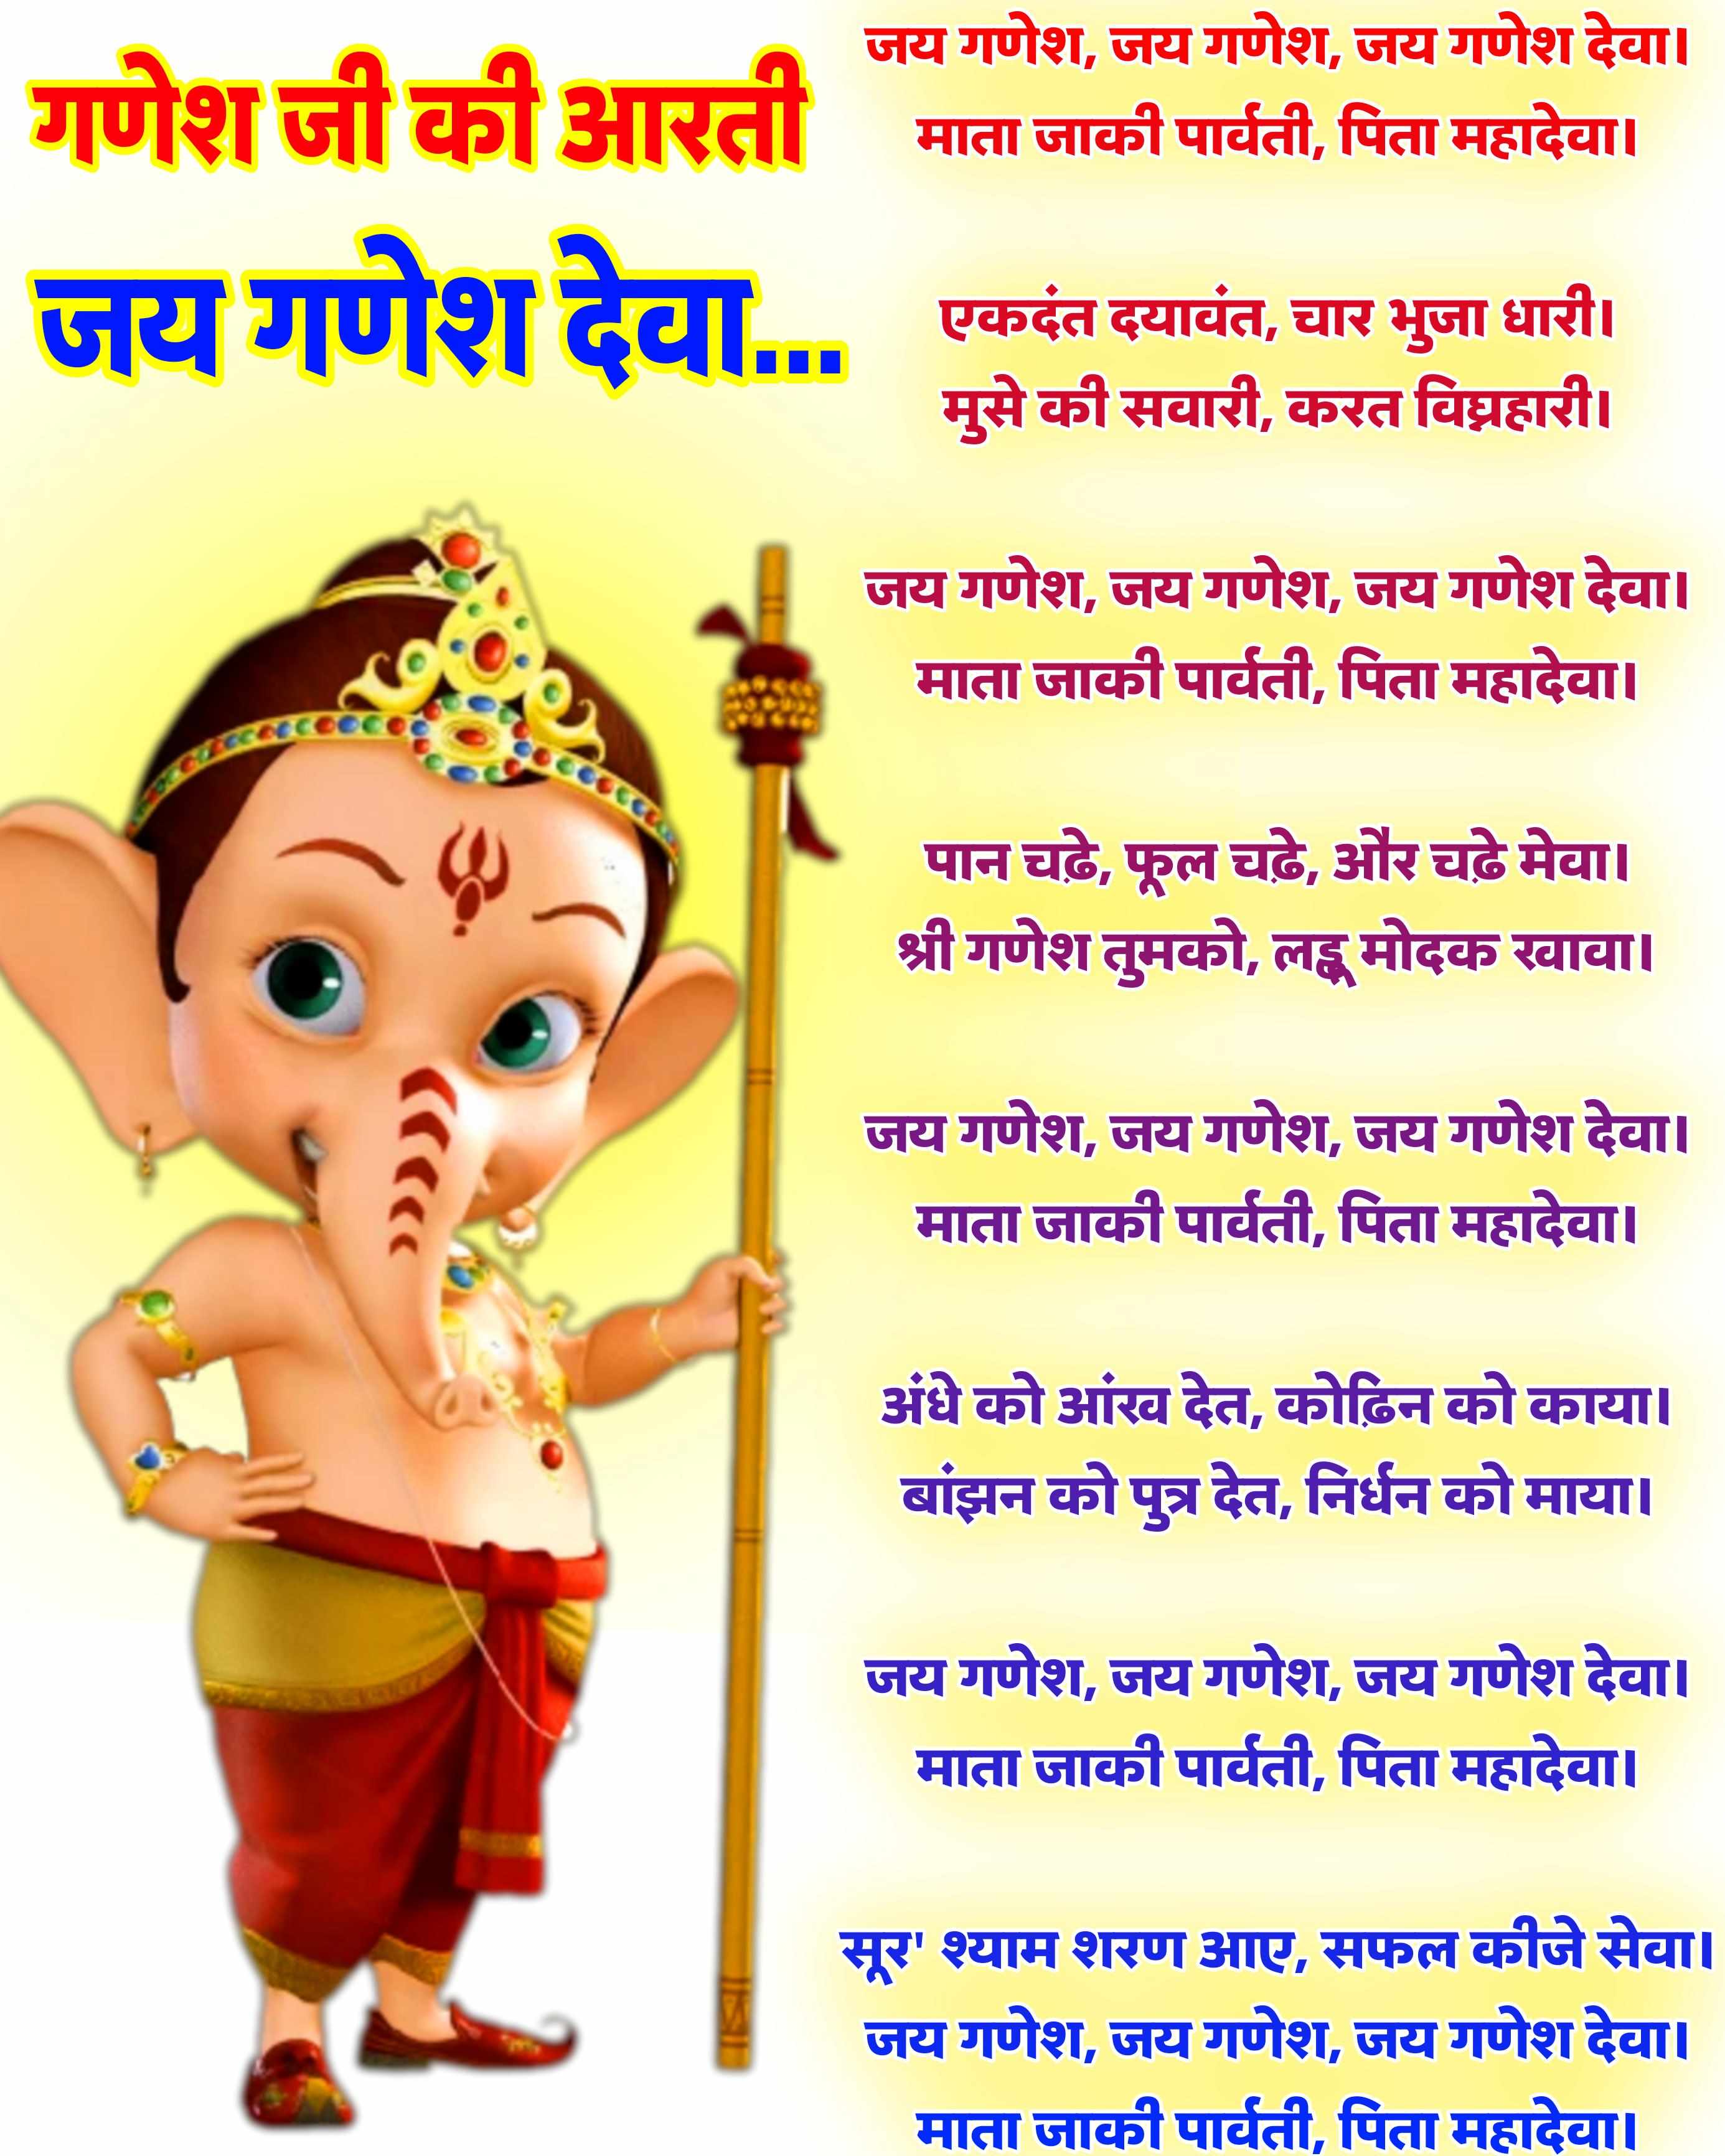 गणेश जी की आरती हिंदी लिखित फोटो में | जय गणेश देवा | Ganesh ji aarti lyrics hindi Photo